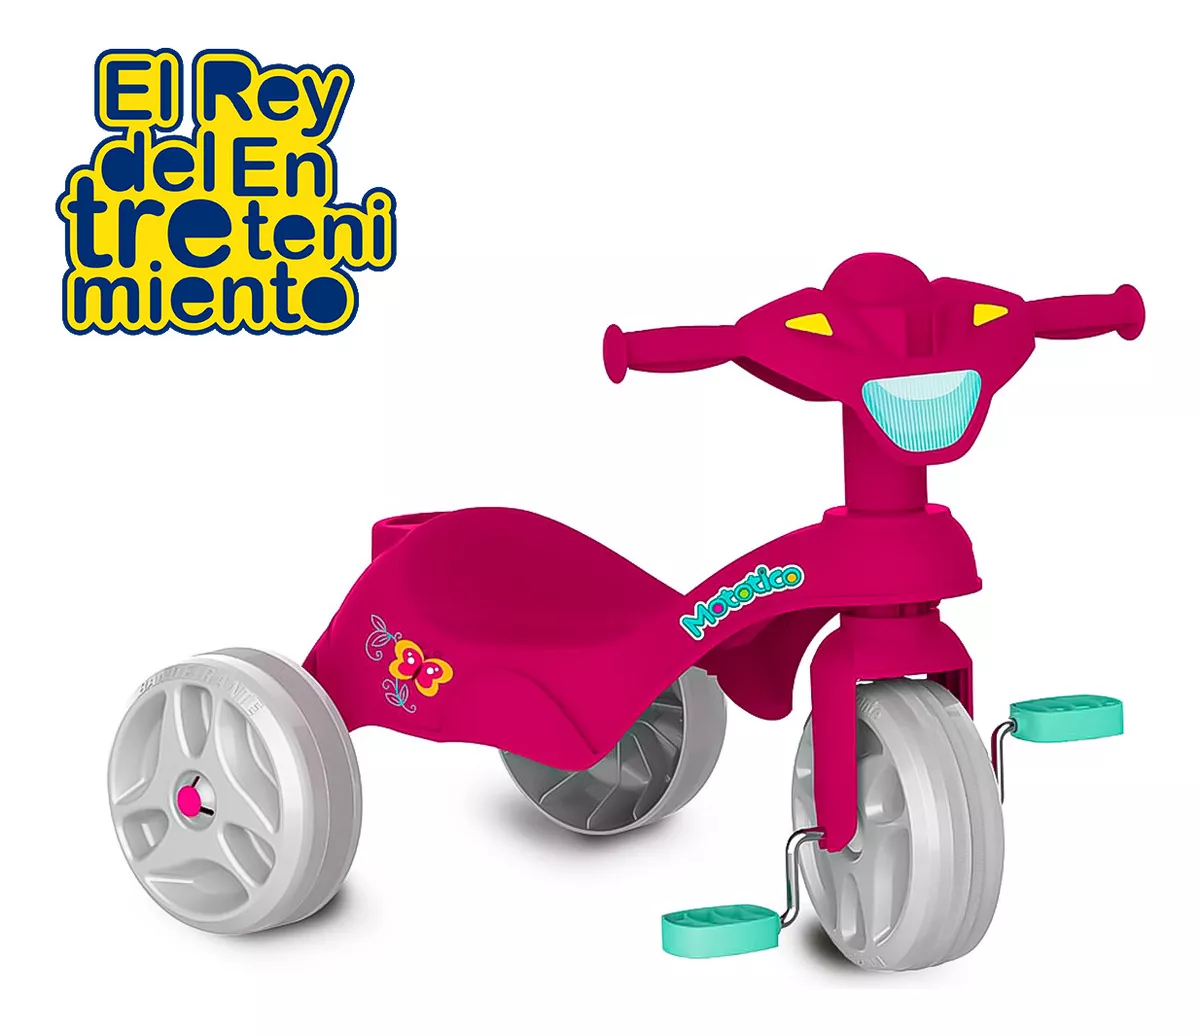 Tercera imagen para búsqueda de triciclos para niños